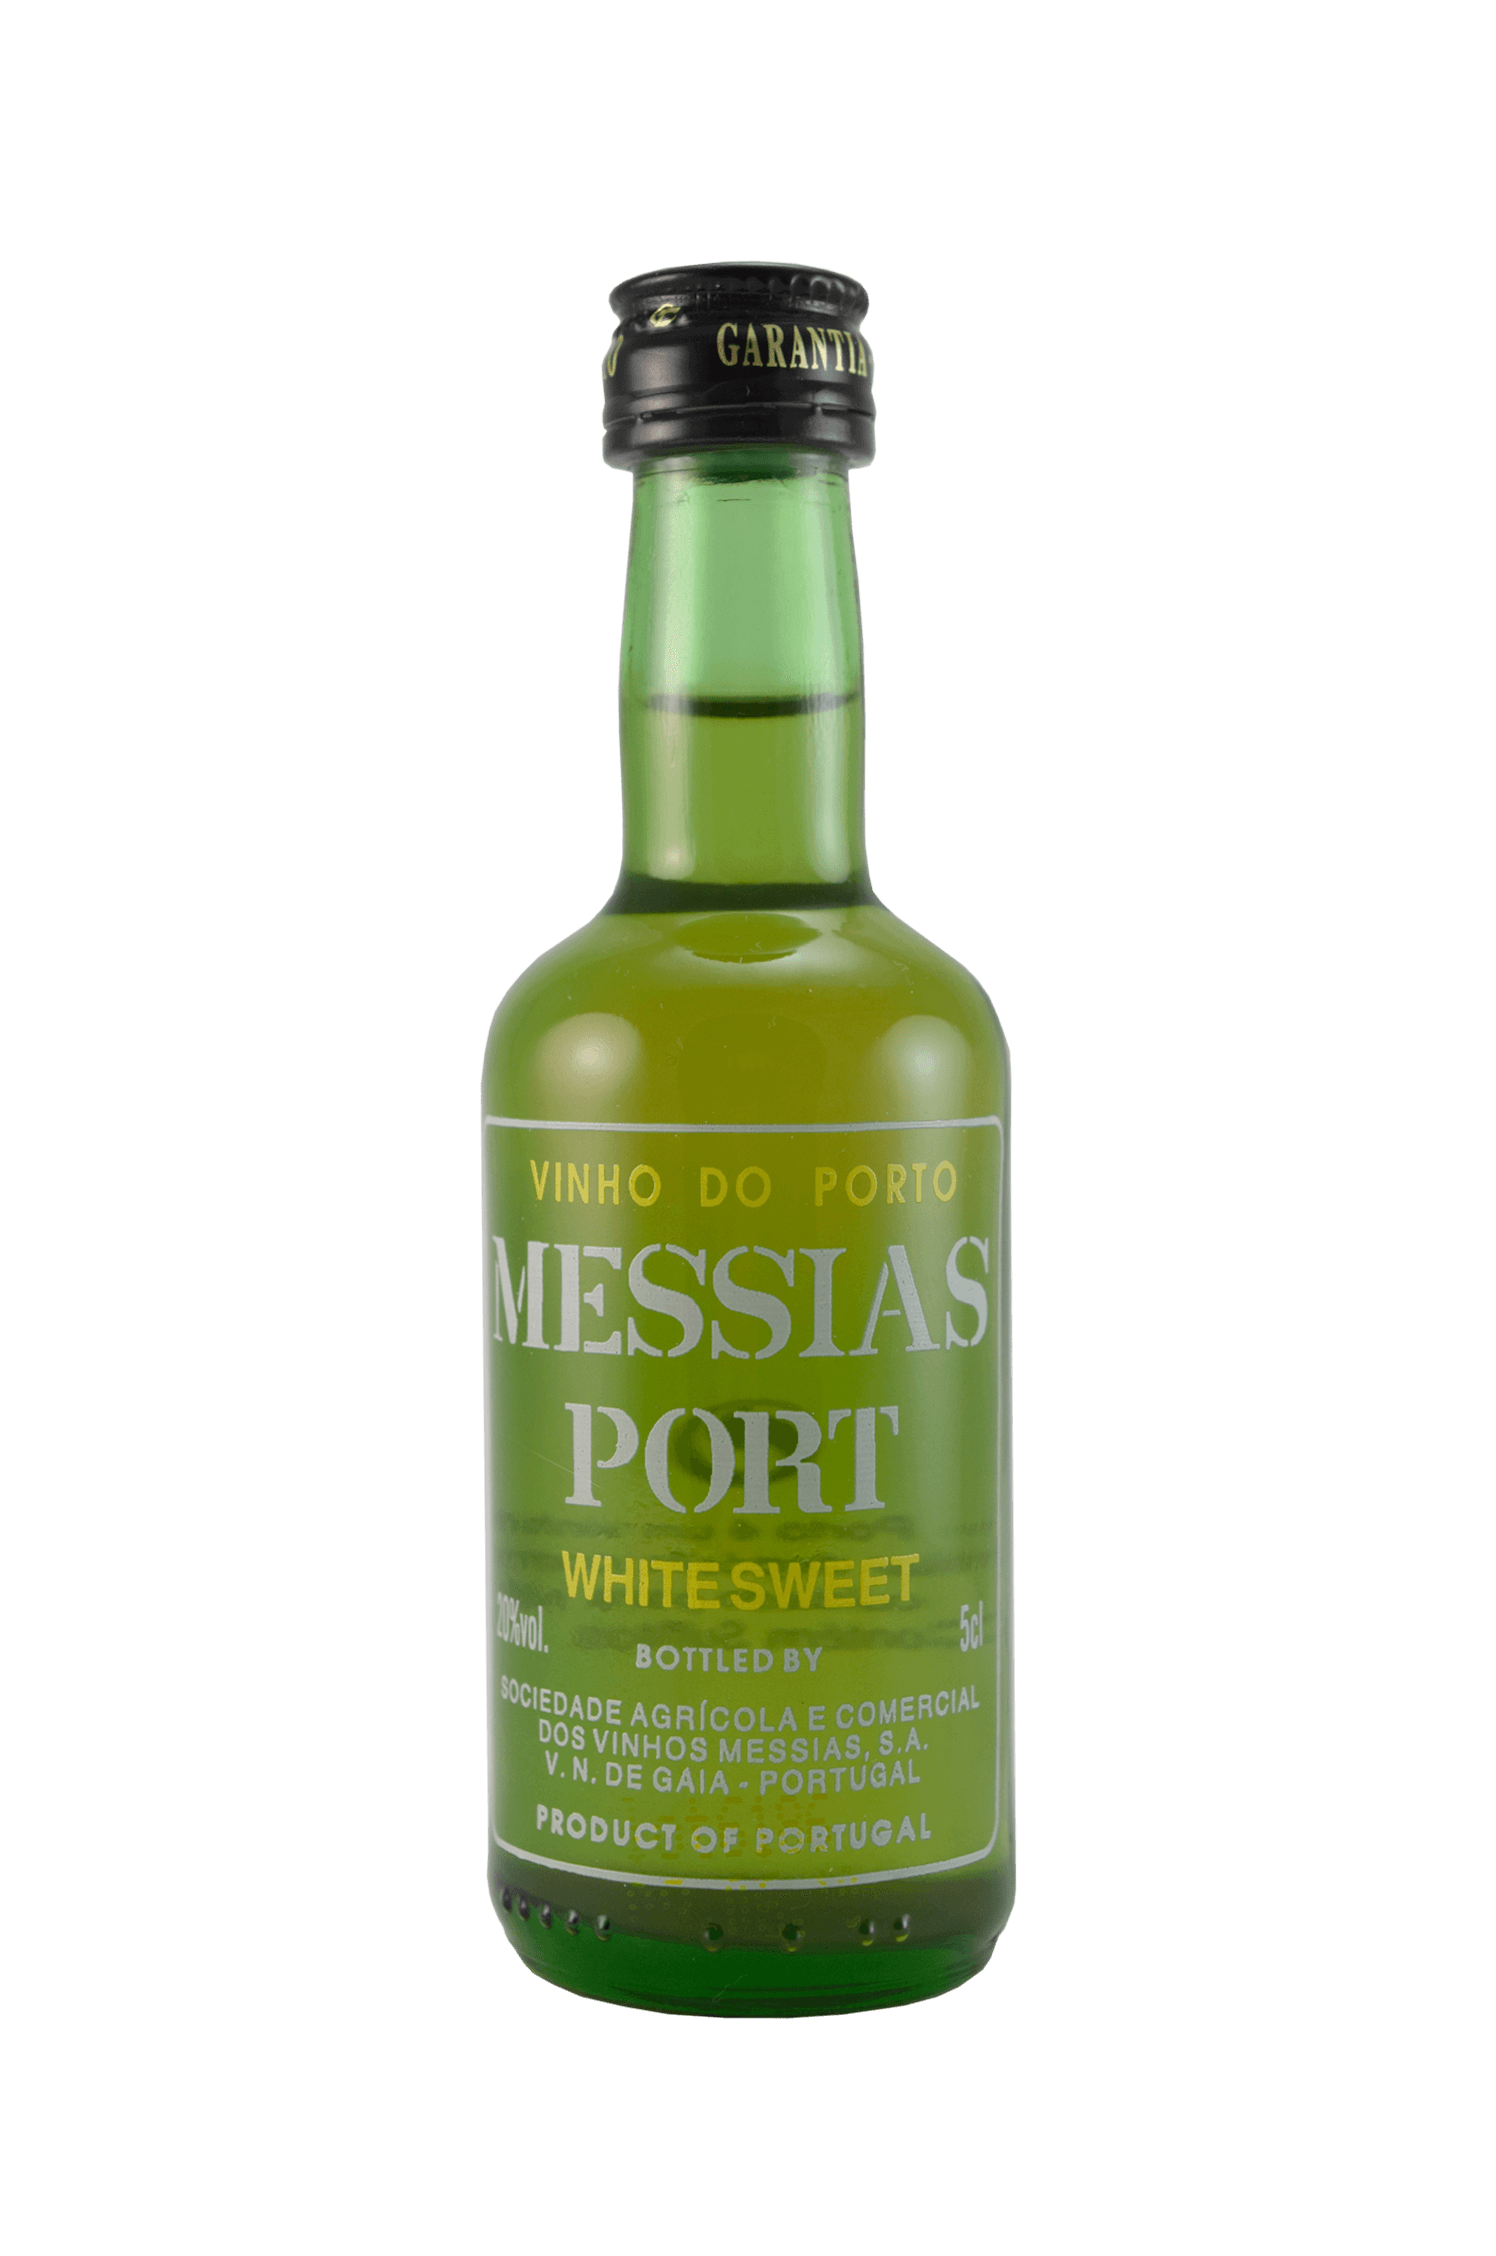 Messias Port White Sweet